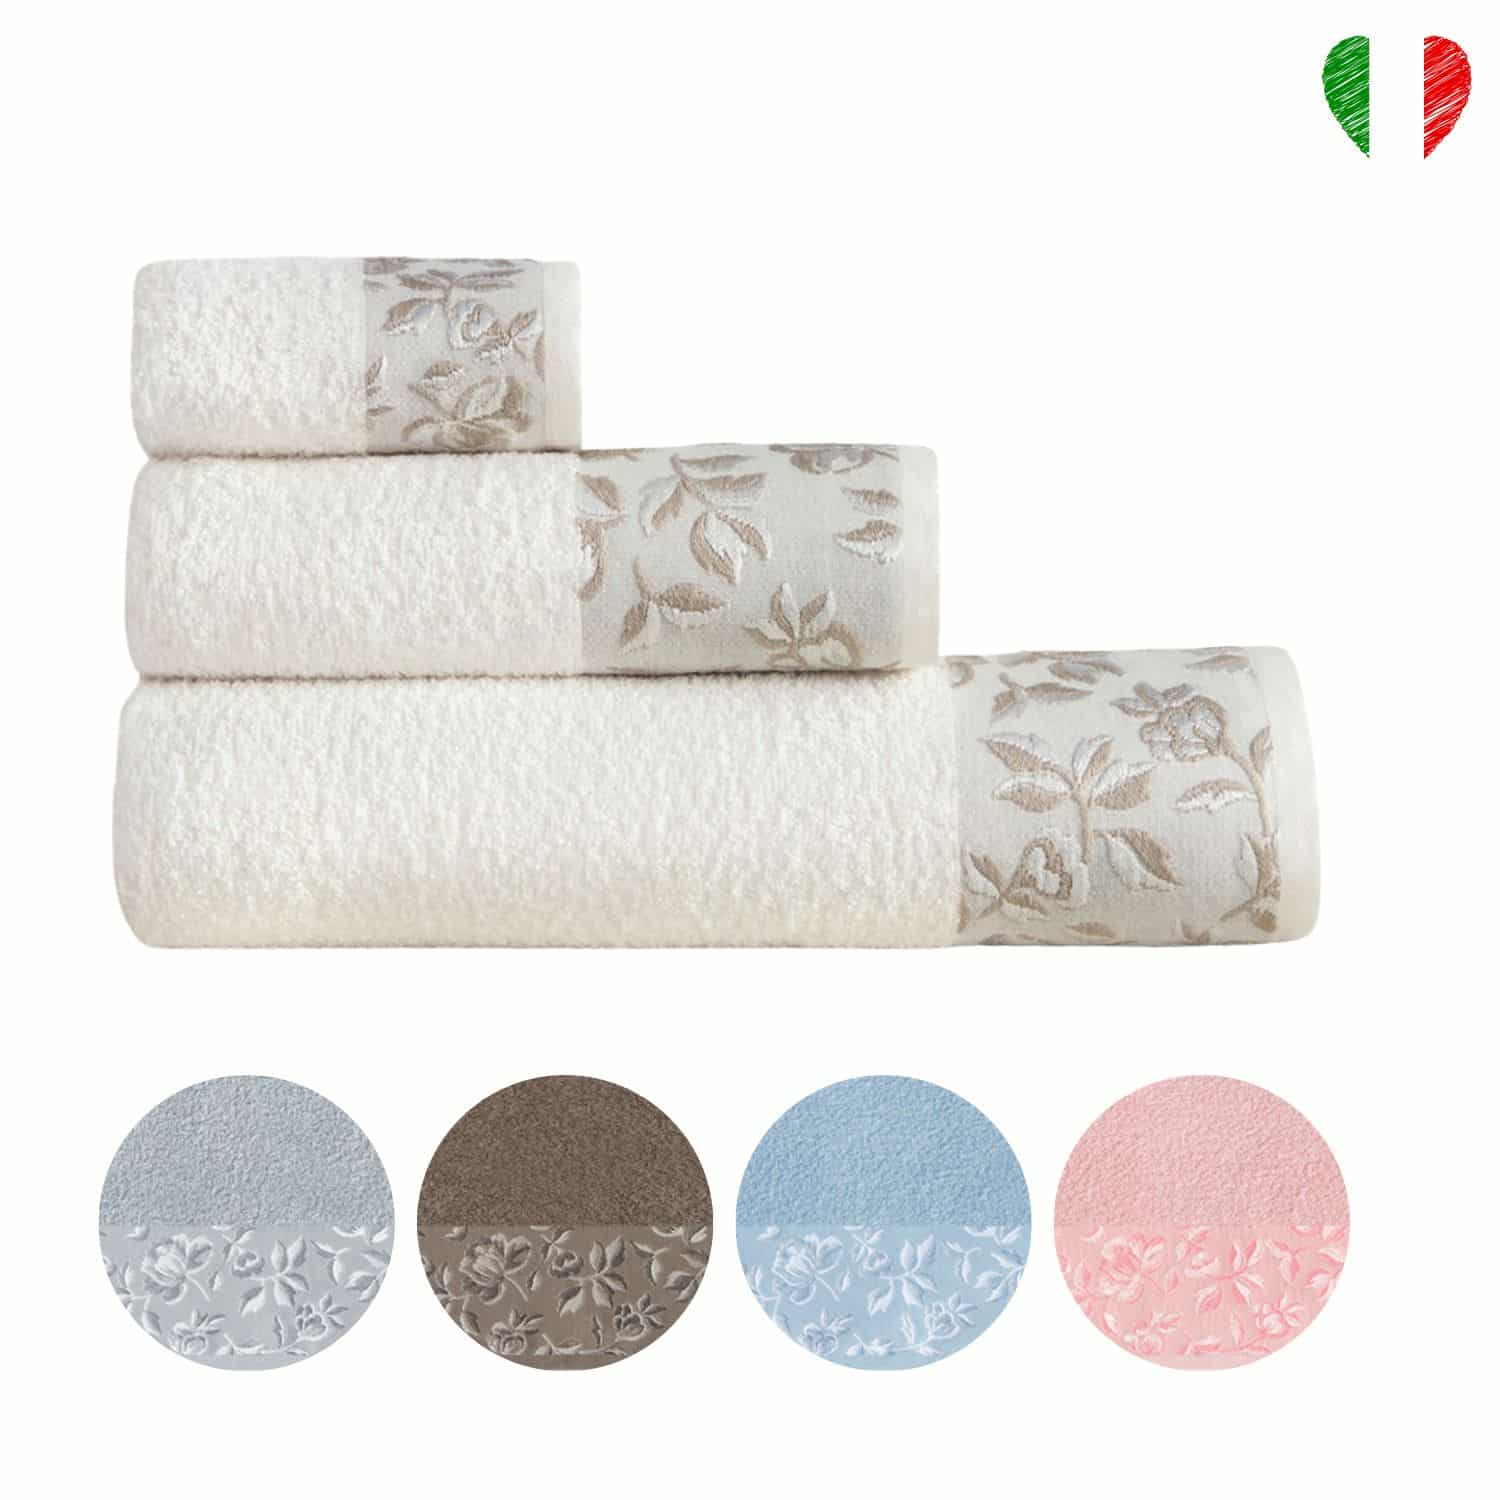 roseto-set-spugna-bagno-cotone-made-in-italy-jacquard-fiorato-classico-copertina